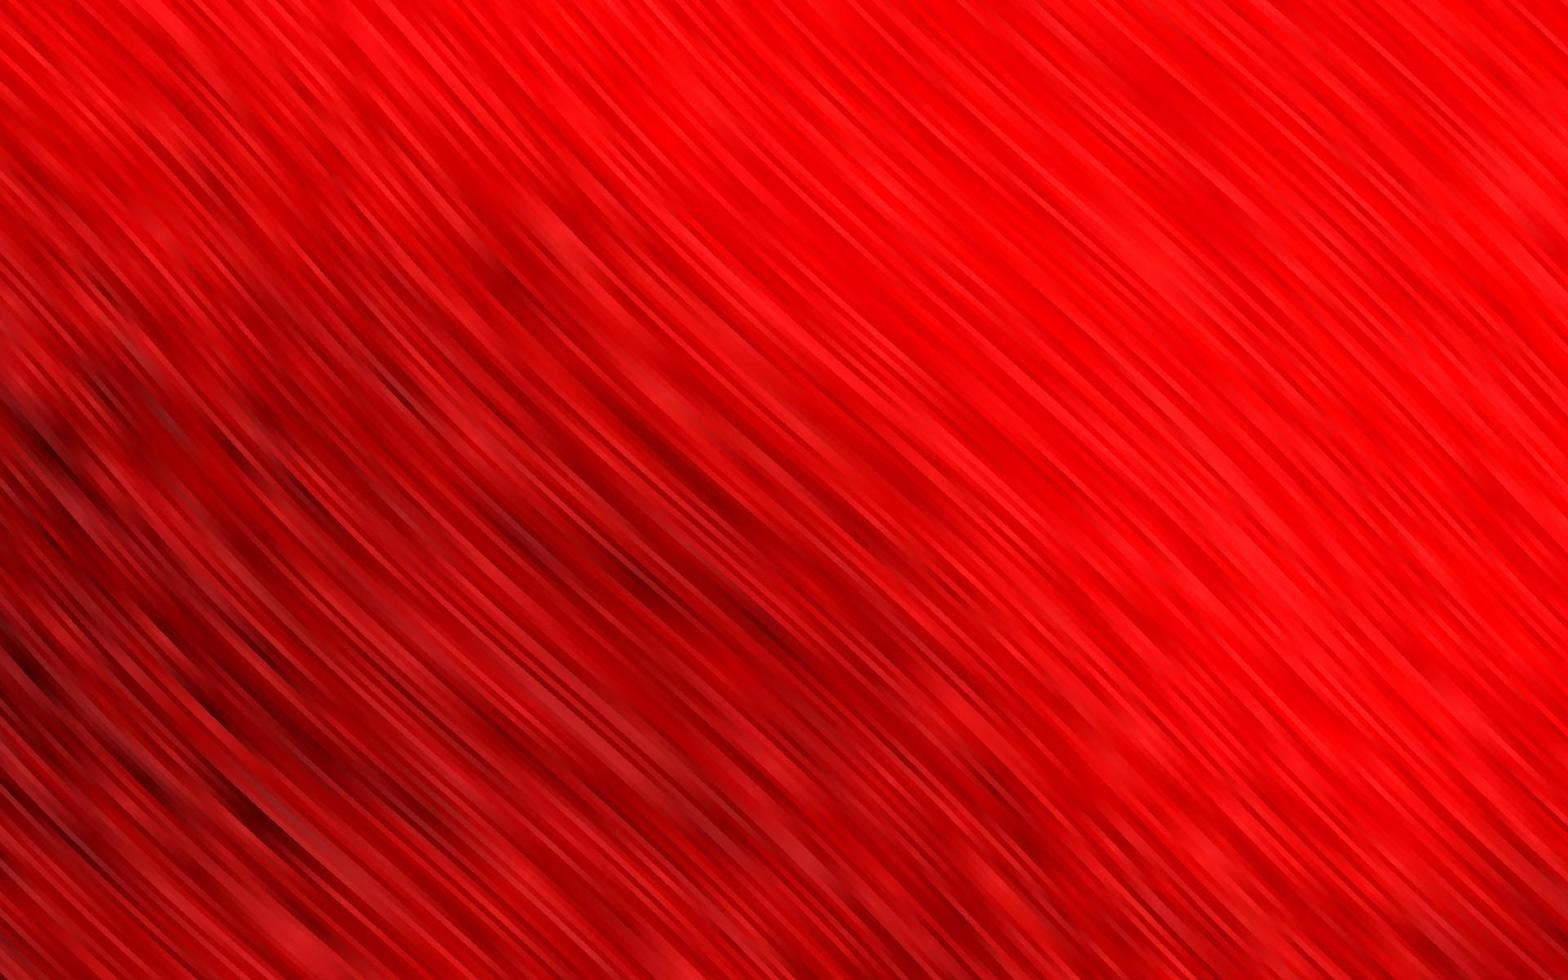 modelo de vetor vermelho claro com linhas ovais.